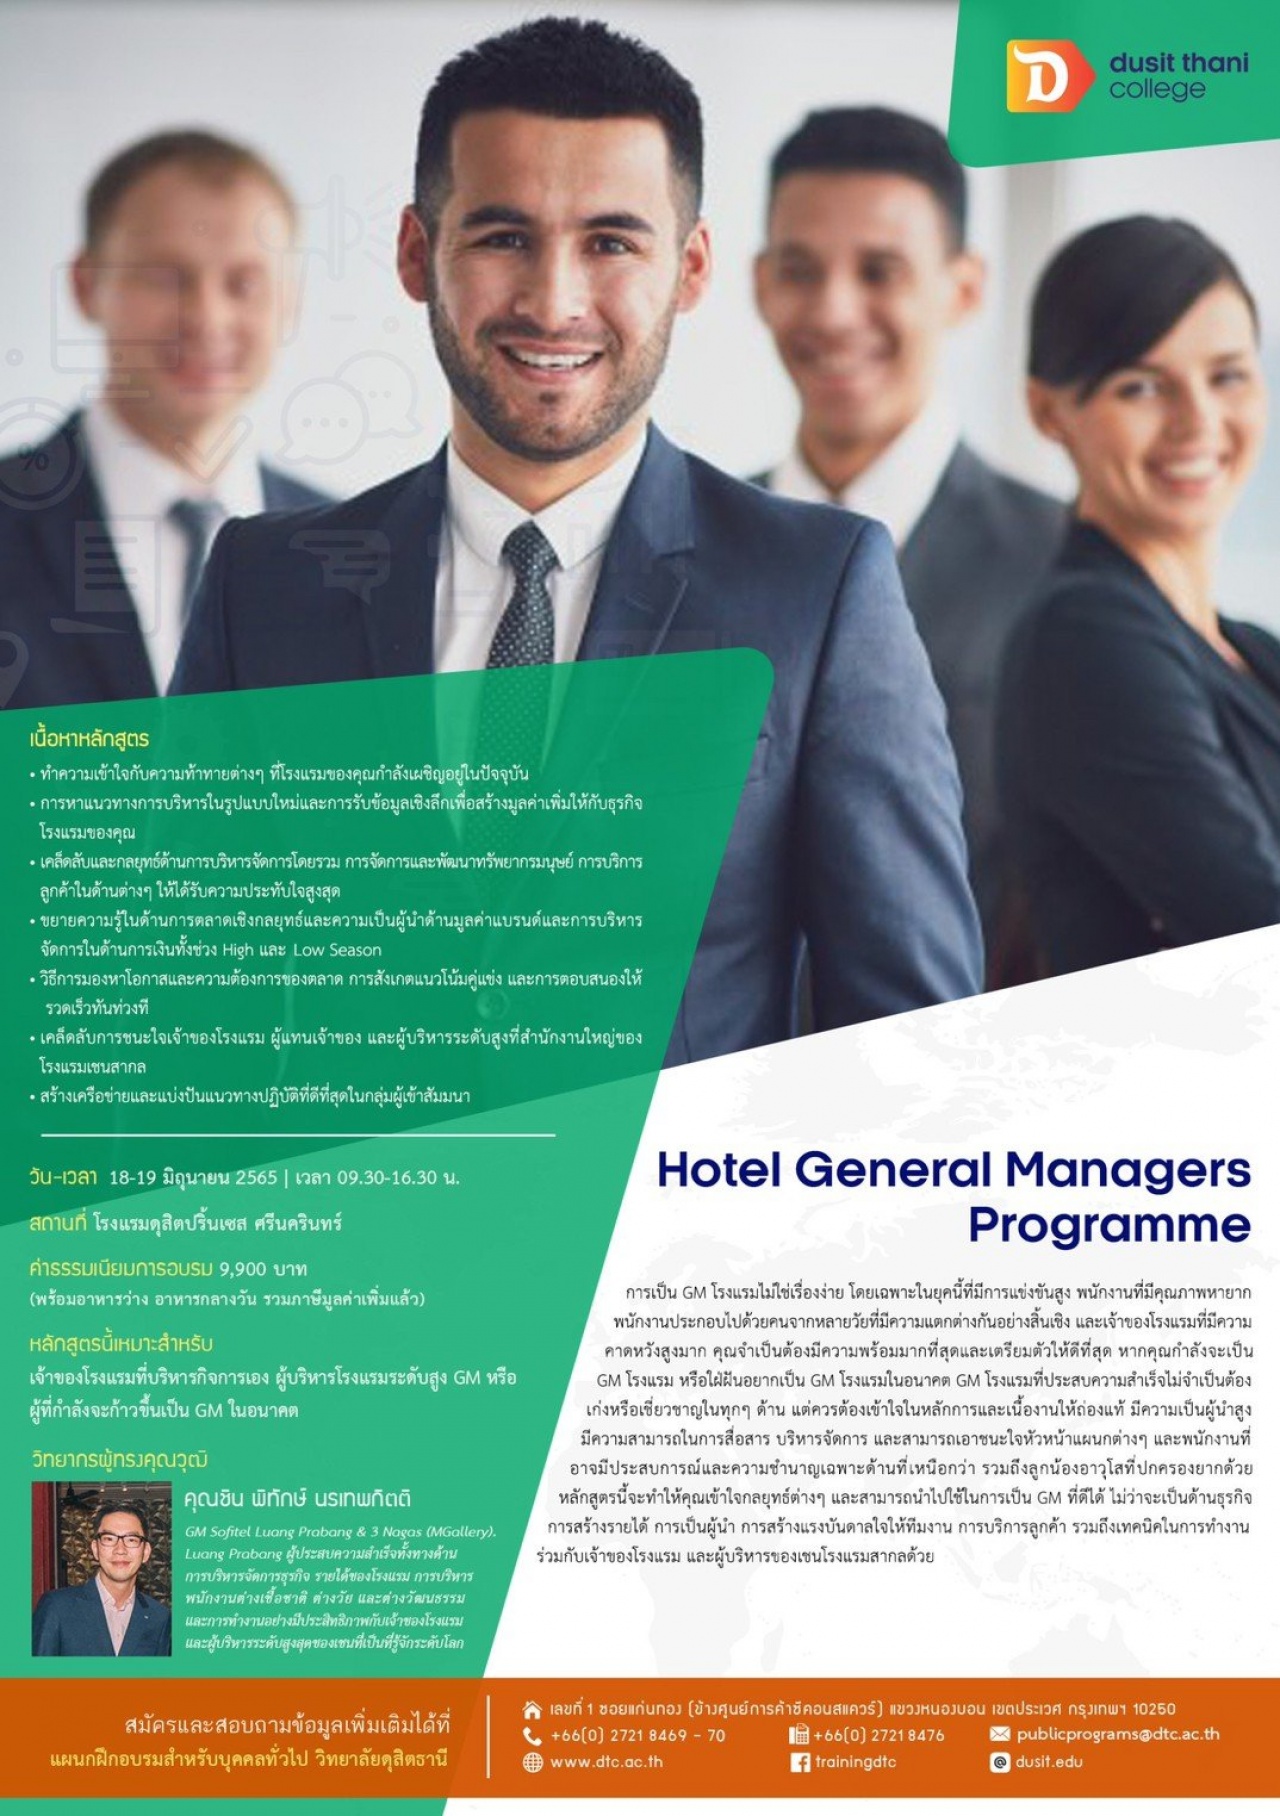 หลักสูตร Hotel General Managers Program